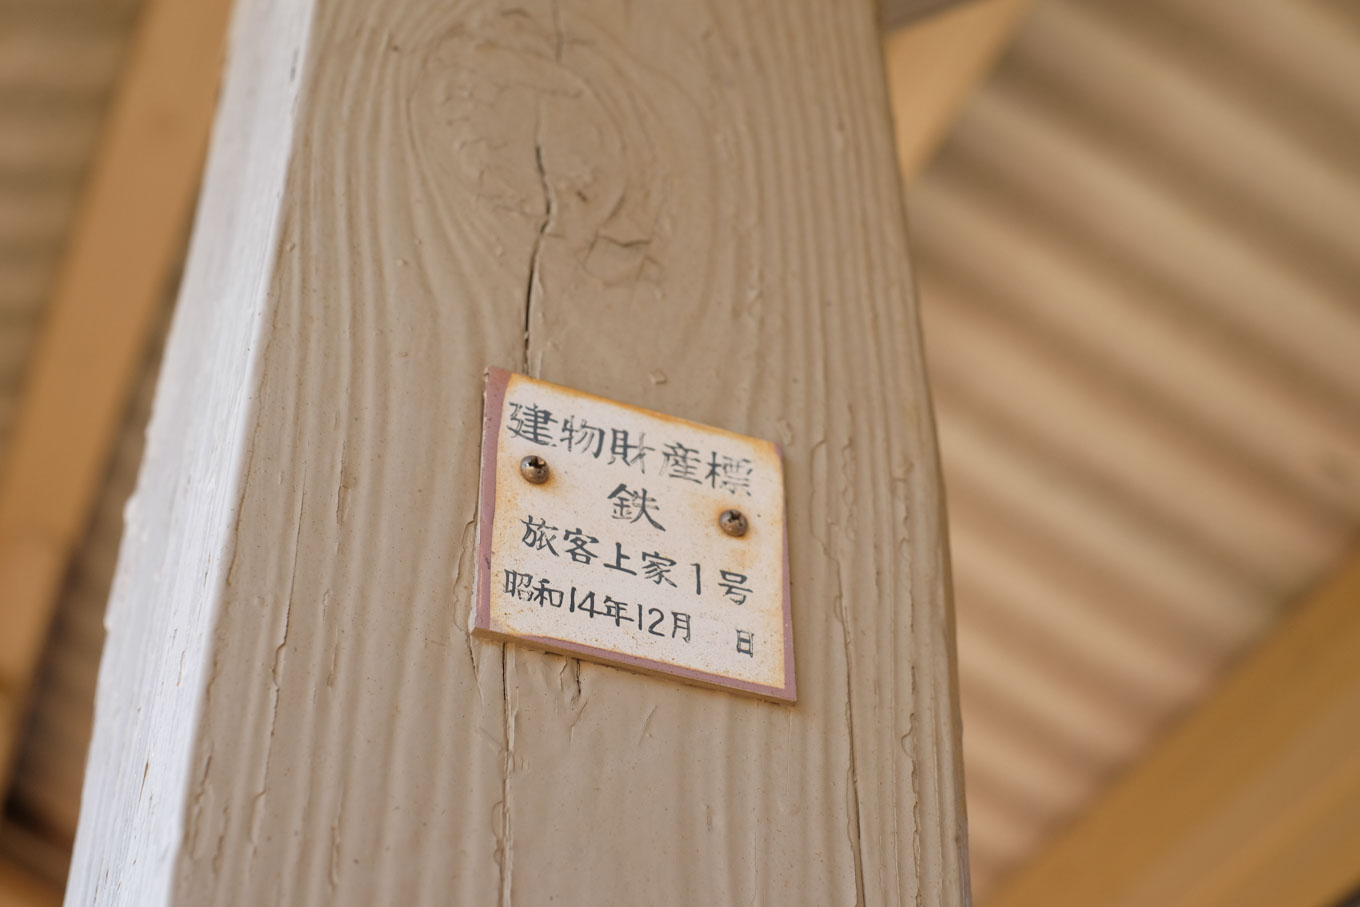 昭和14年の文字がある、ホーム上屋の建物財産標。